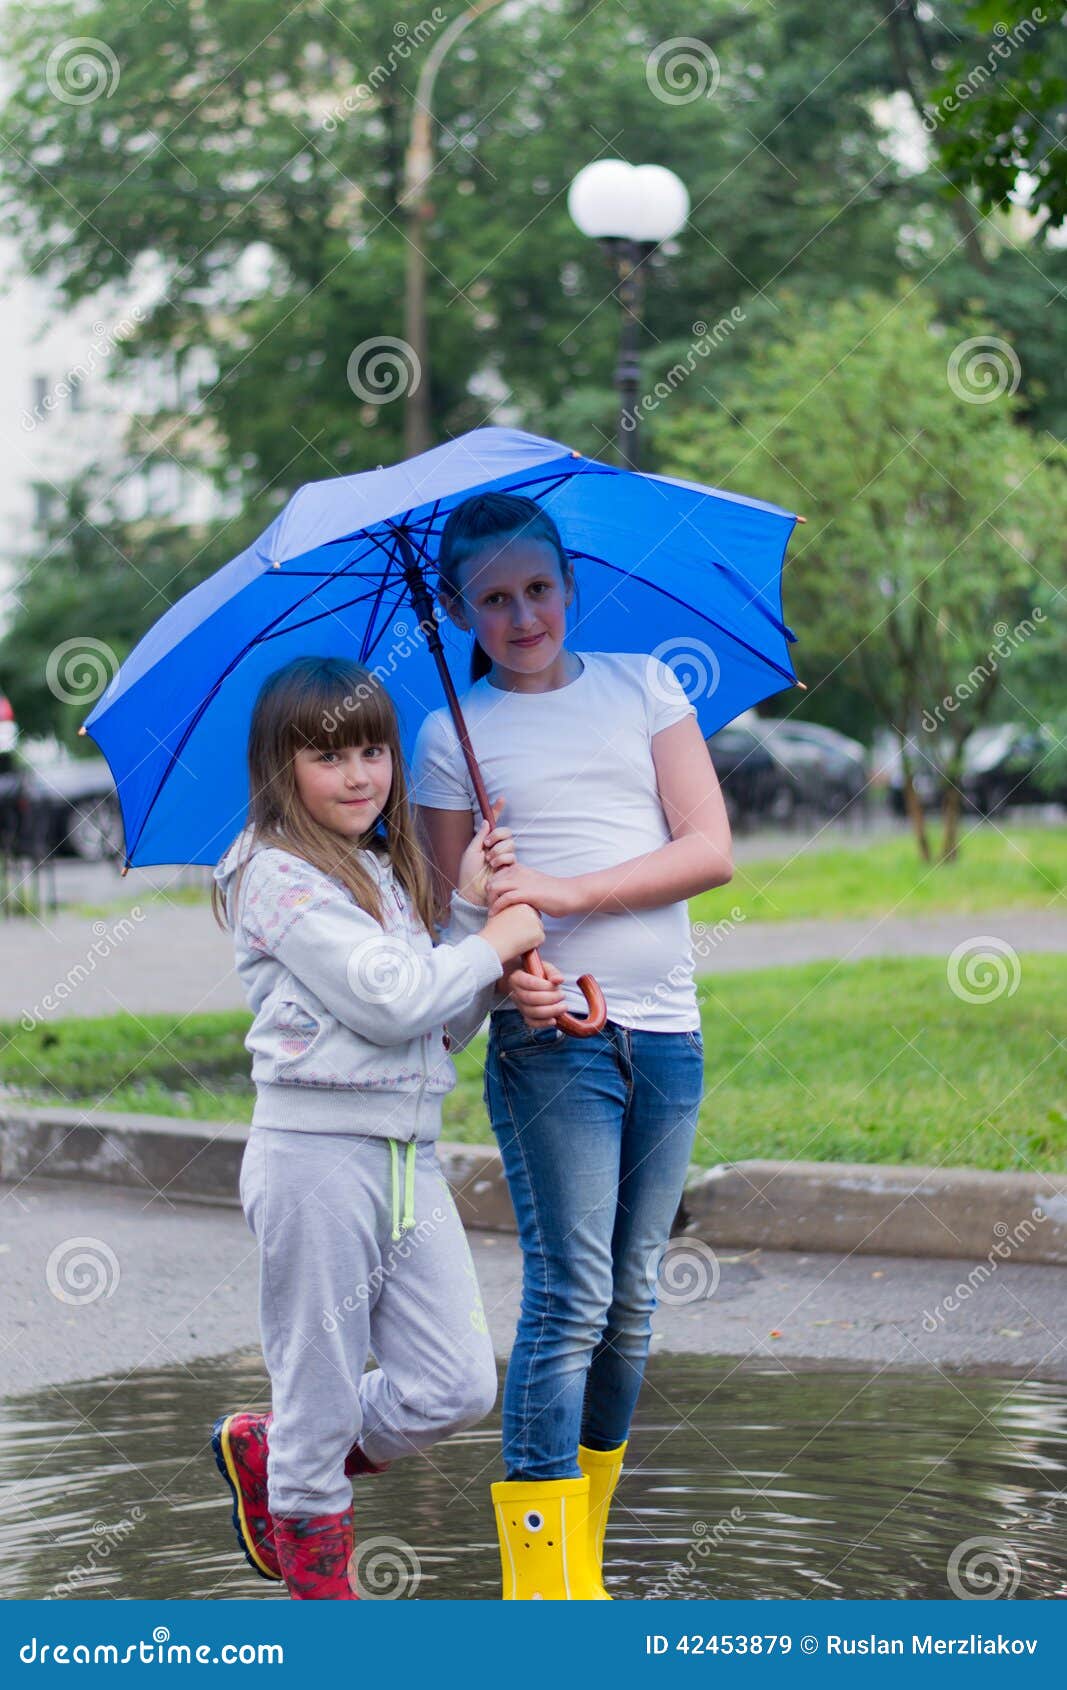 Matchmauring-Regenschirm für zwei